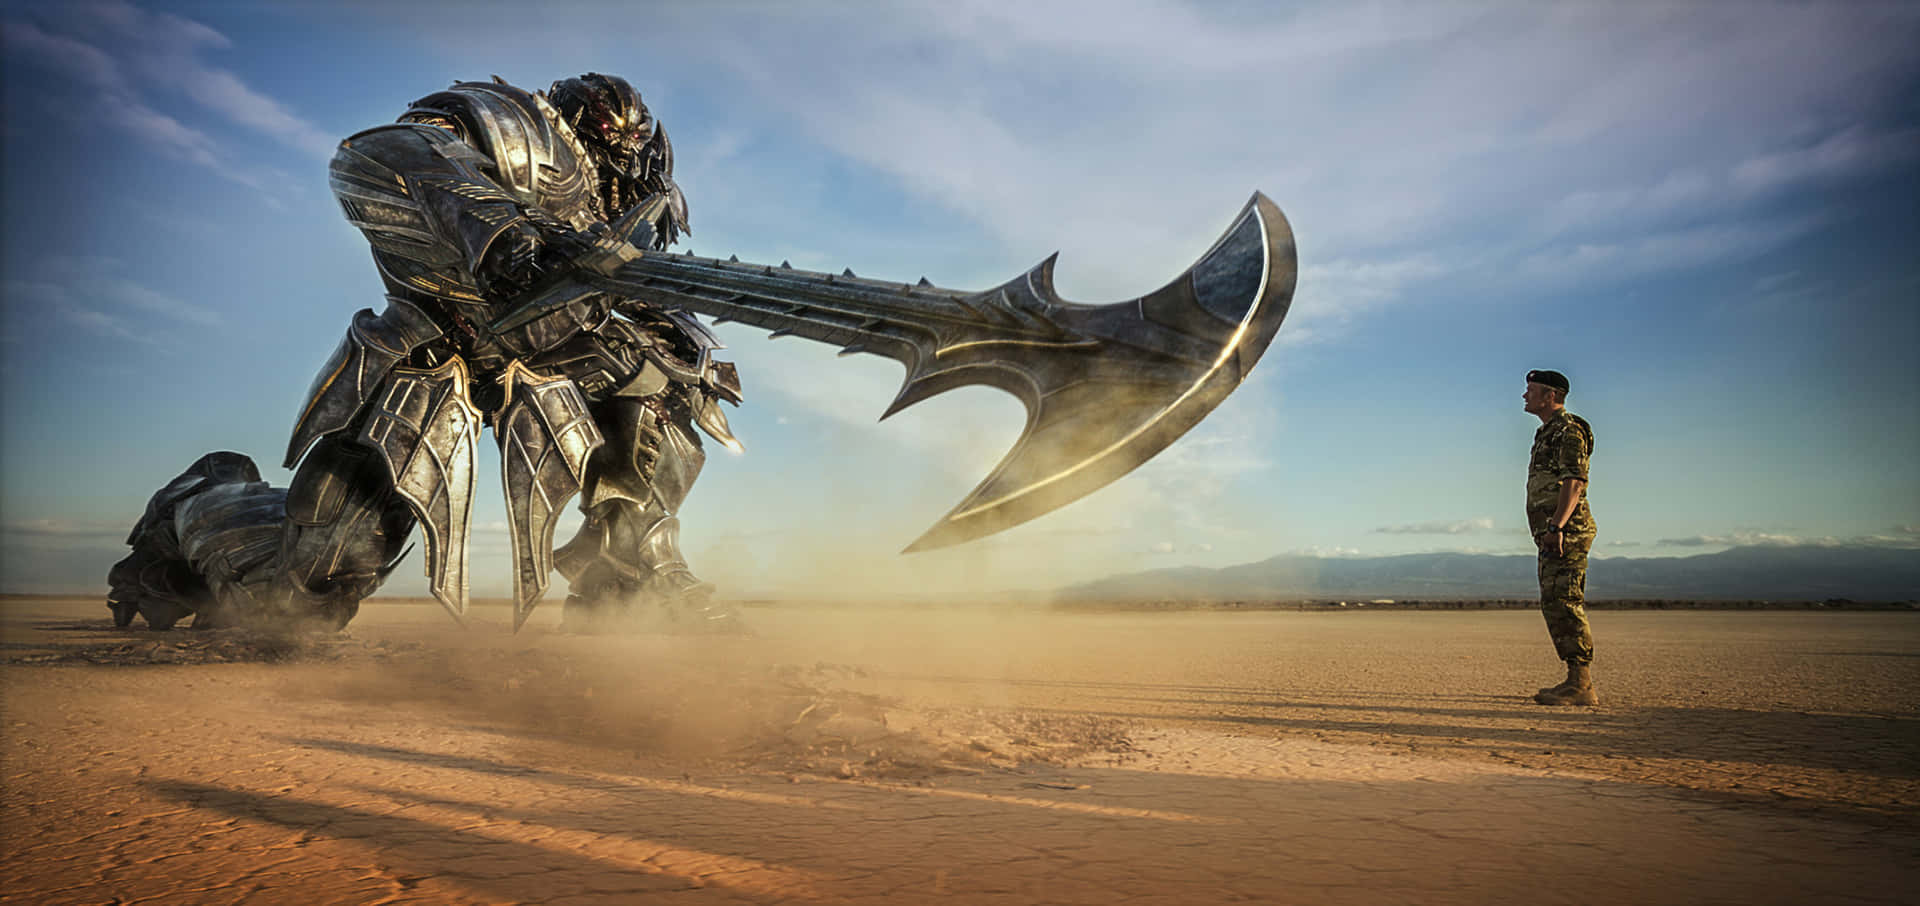 Megatronin Den Bildern Von Transformers: The Last Knight